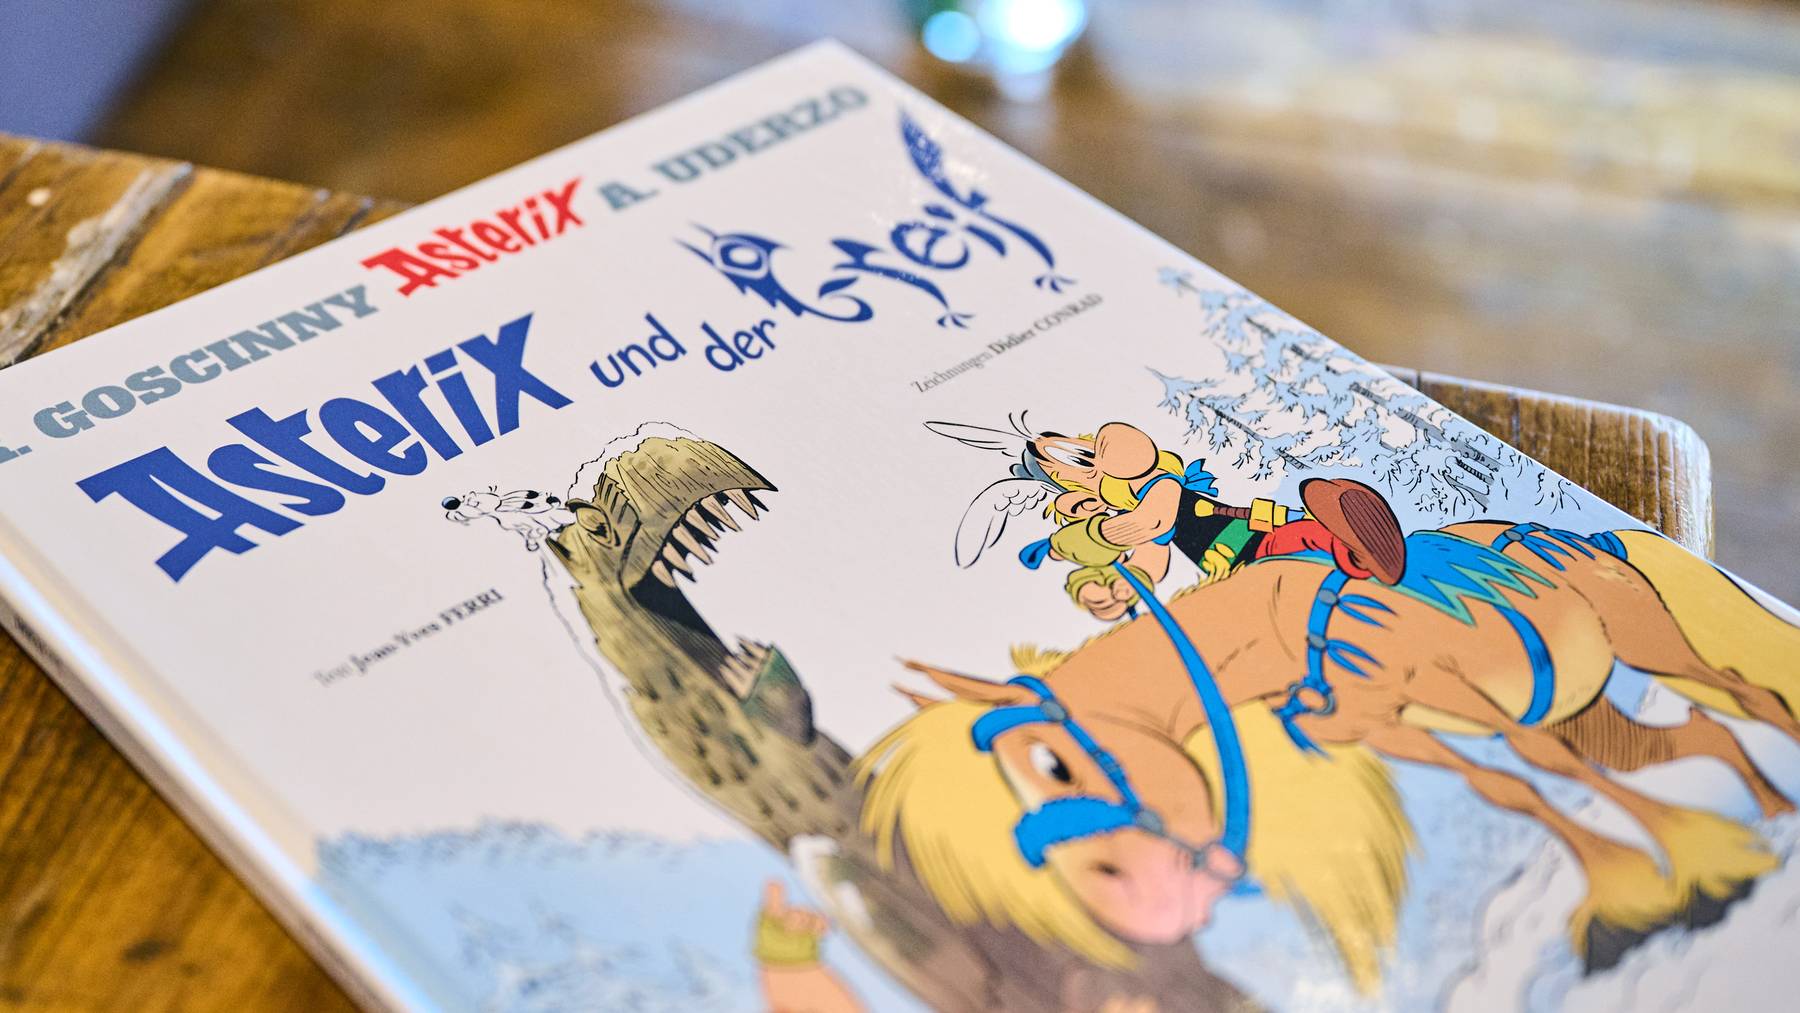 Der neue Asterix-Band «Asterix und der Greif» liegt auf einem Tisch in einem Cafe.